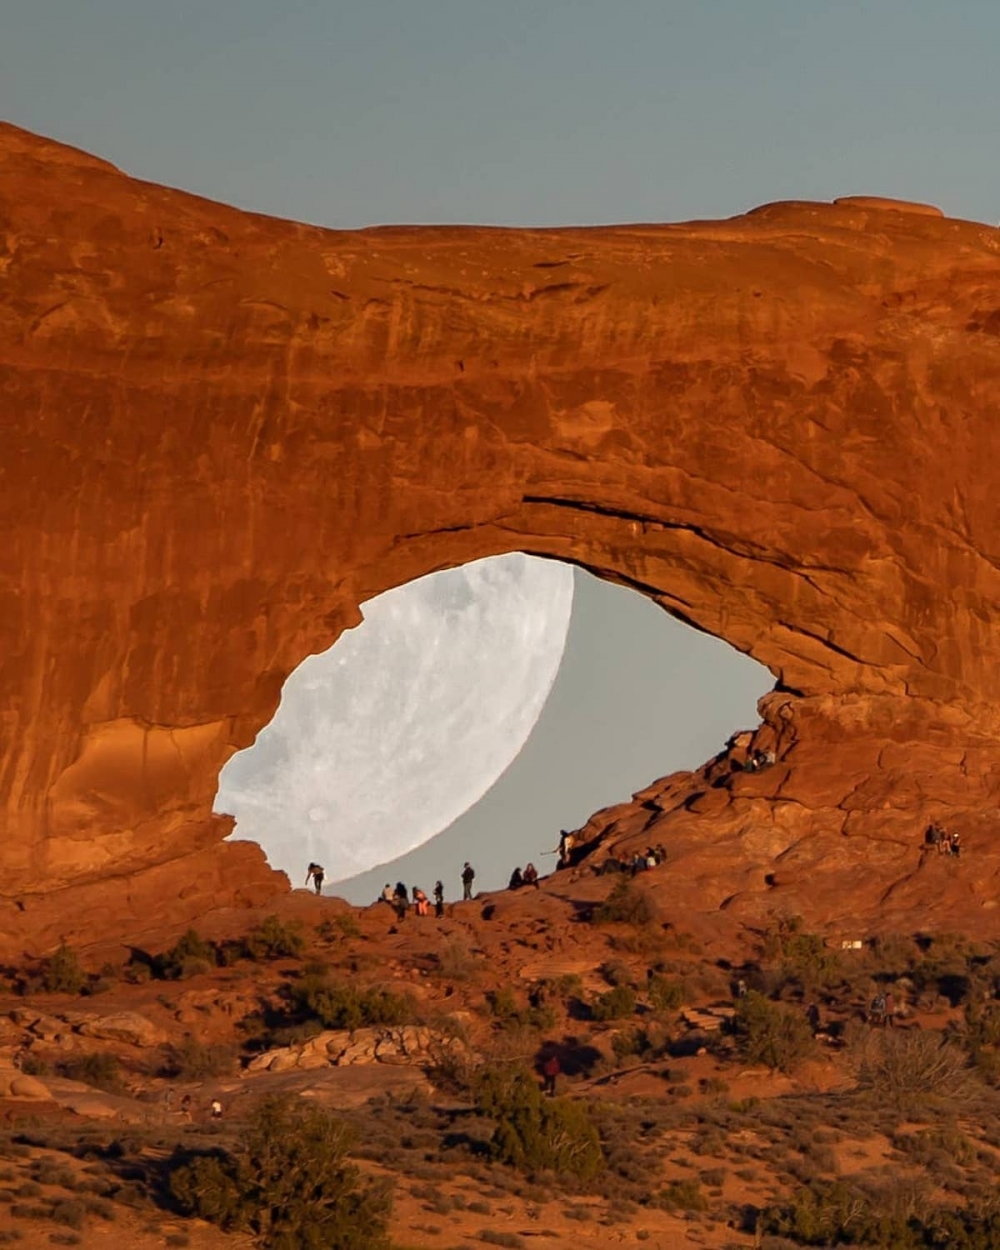 Hình ảnh siêu thực về mặt trăng khổng lồ trong sa mạc